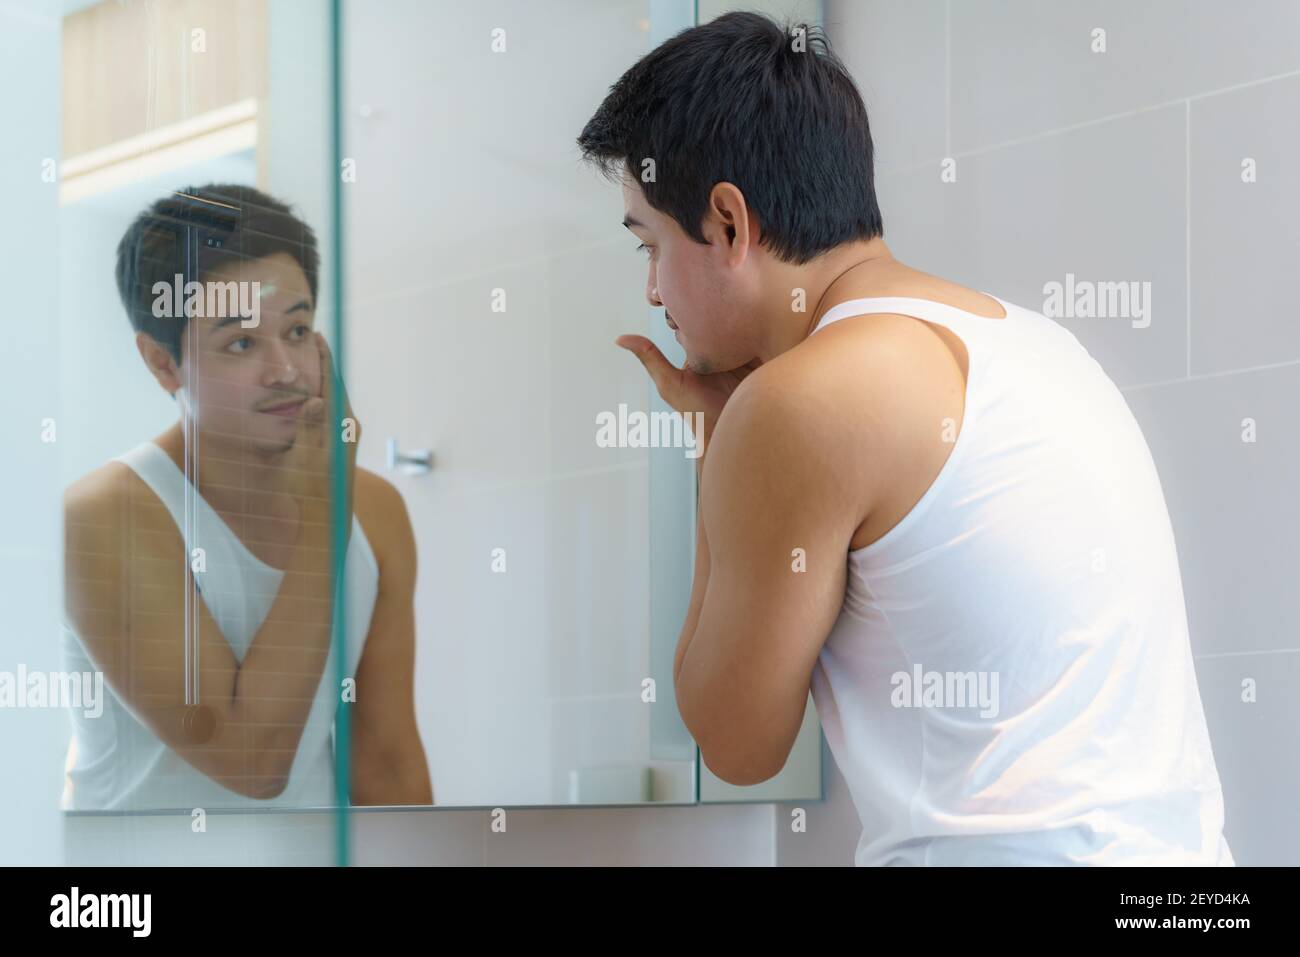 L'homme asiatique applique de la crème hydratante pour le visage après le bain et se prépare à travailler dans la salle de bains de la maison. Banque D'Images